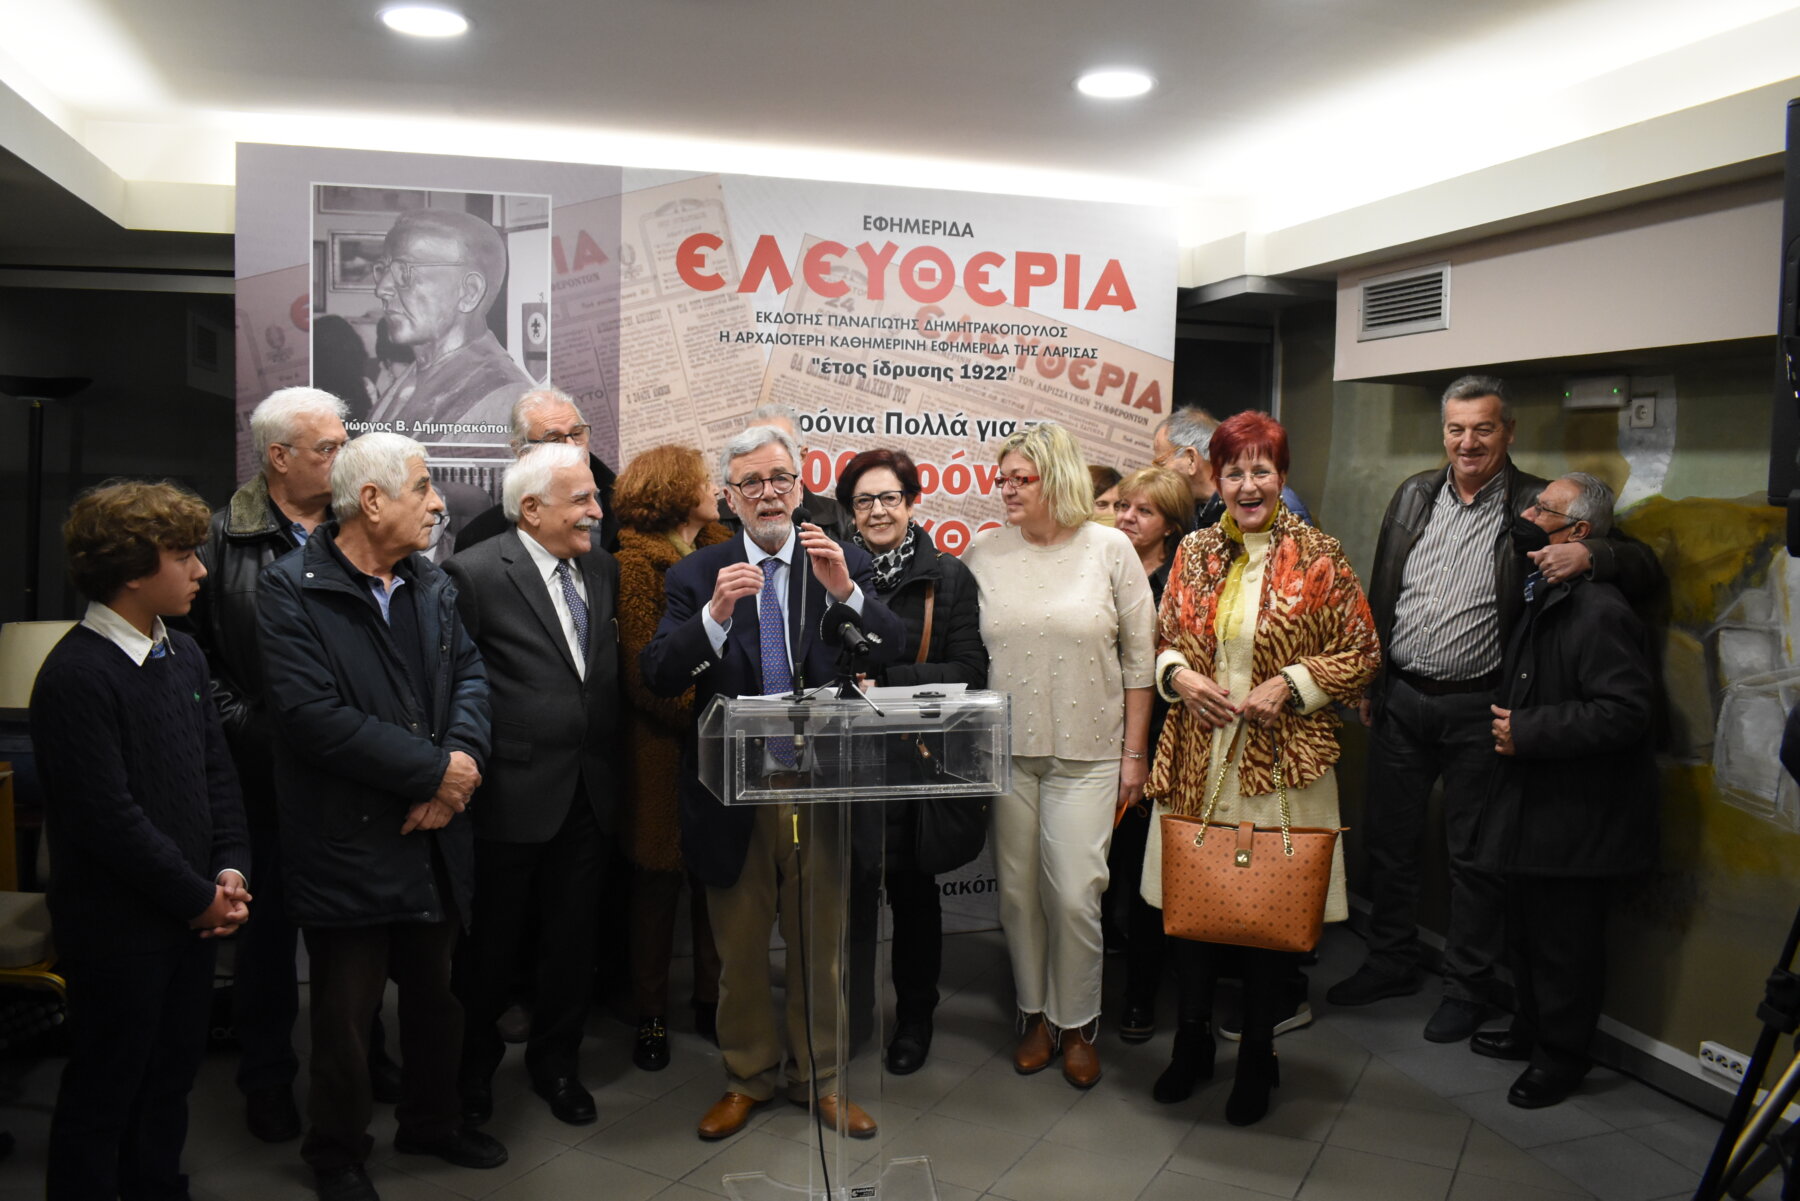 Γ. Δημητρακόπουλος: Αγώνας για την ανάκτηση της «Ελευθερίας» - ιδρύει ινστιτούτο στο όνομα του πατέρα του